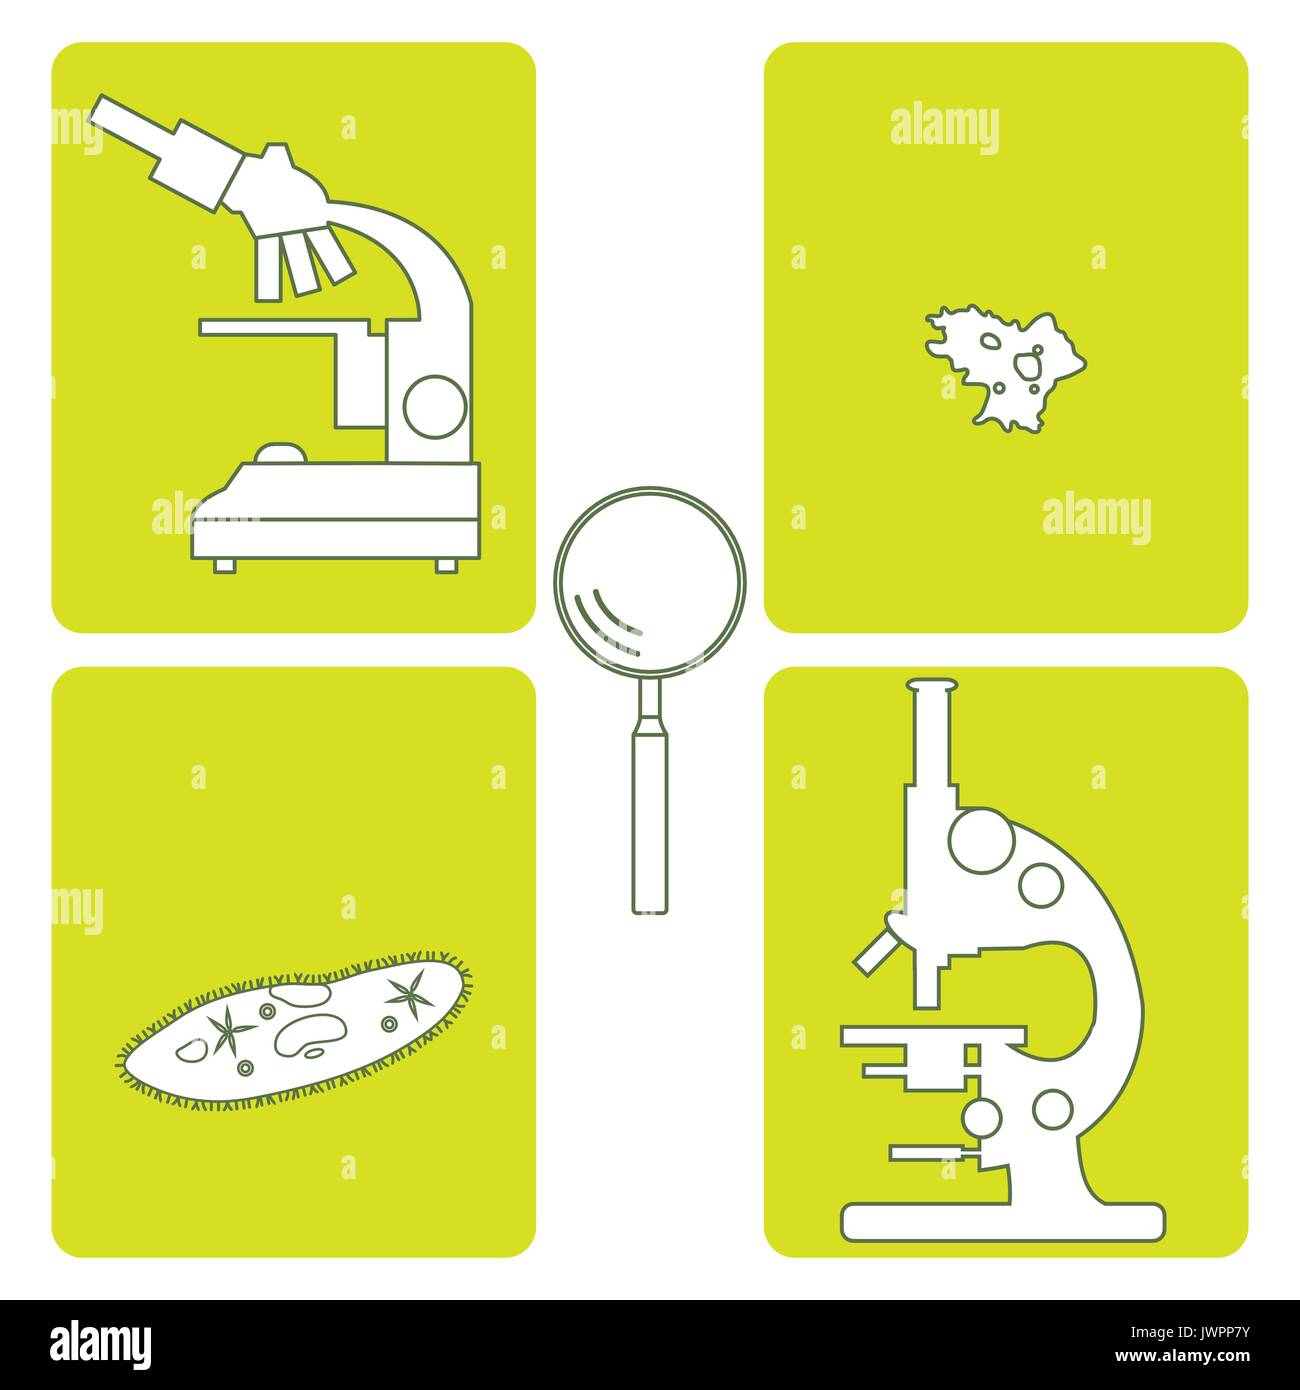 Iconos estilizados de microscopios, lupa, ameba, ciliados-zapatilla. Dispositivo de aumento signo. Símbolo de equipo de laboratorio. Ilustración del Vector